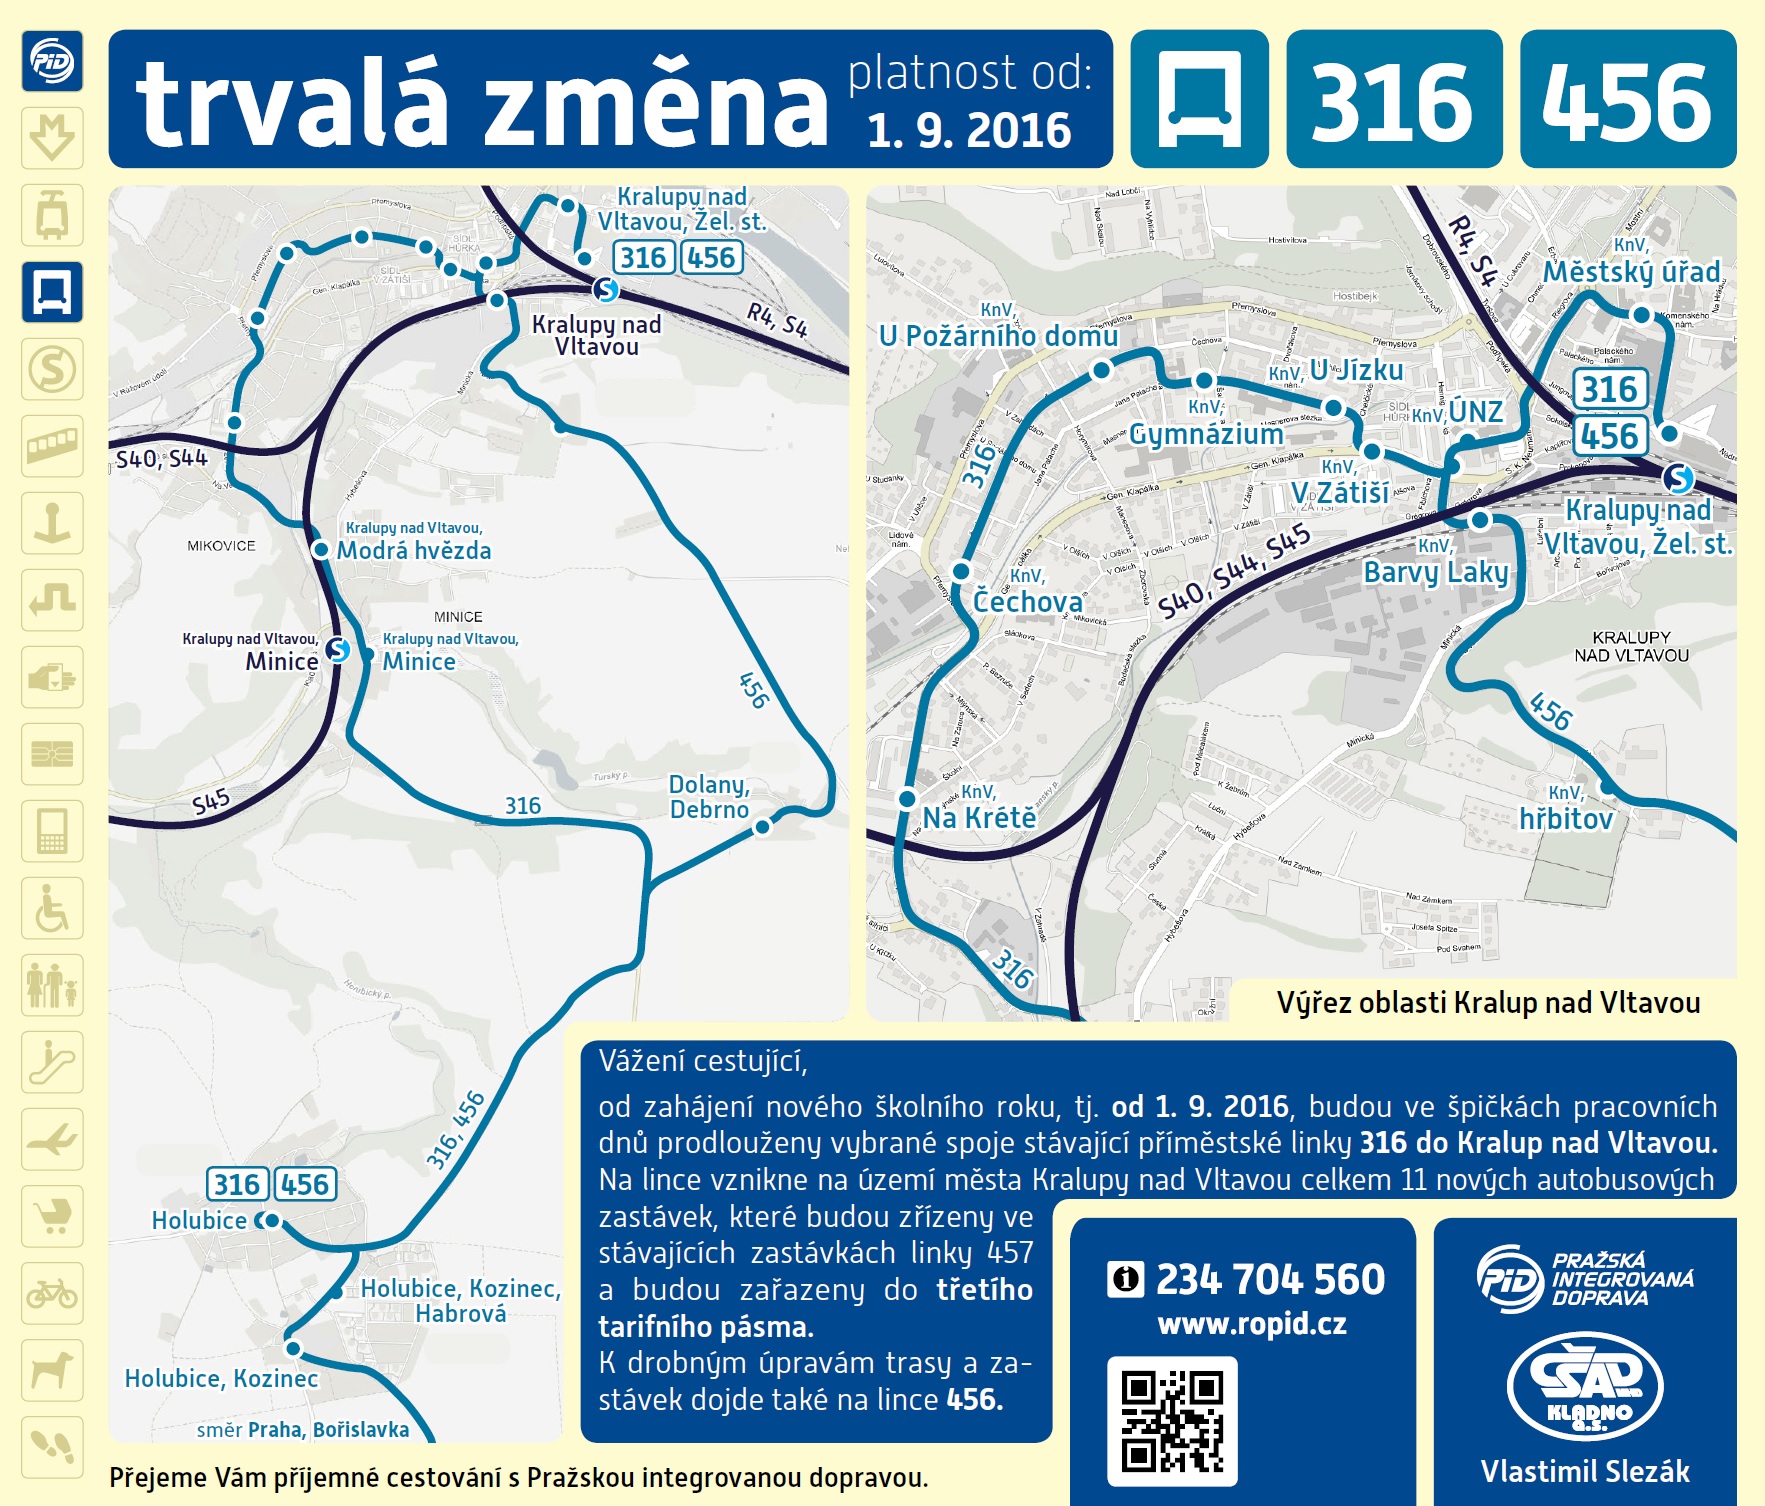 Trasa a zastávky linek 316 a 456 mezi Holubicemi a Kralupy nad Vltavou